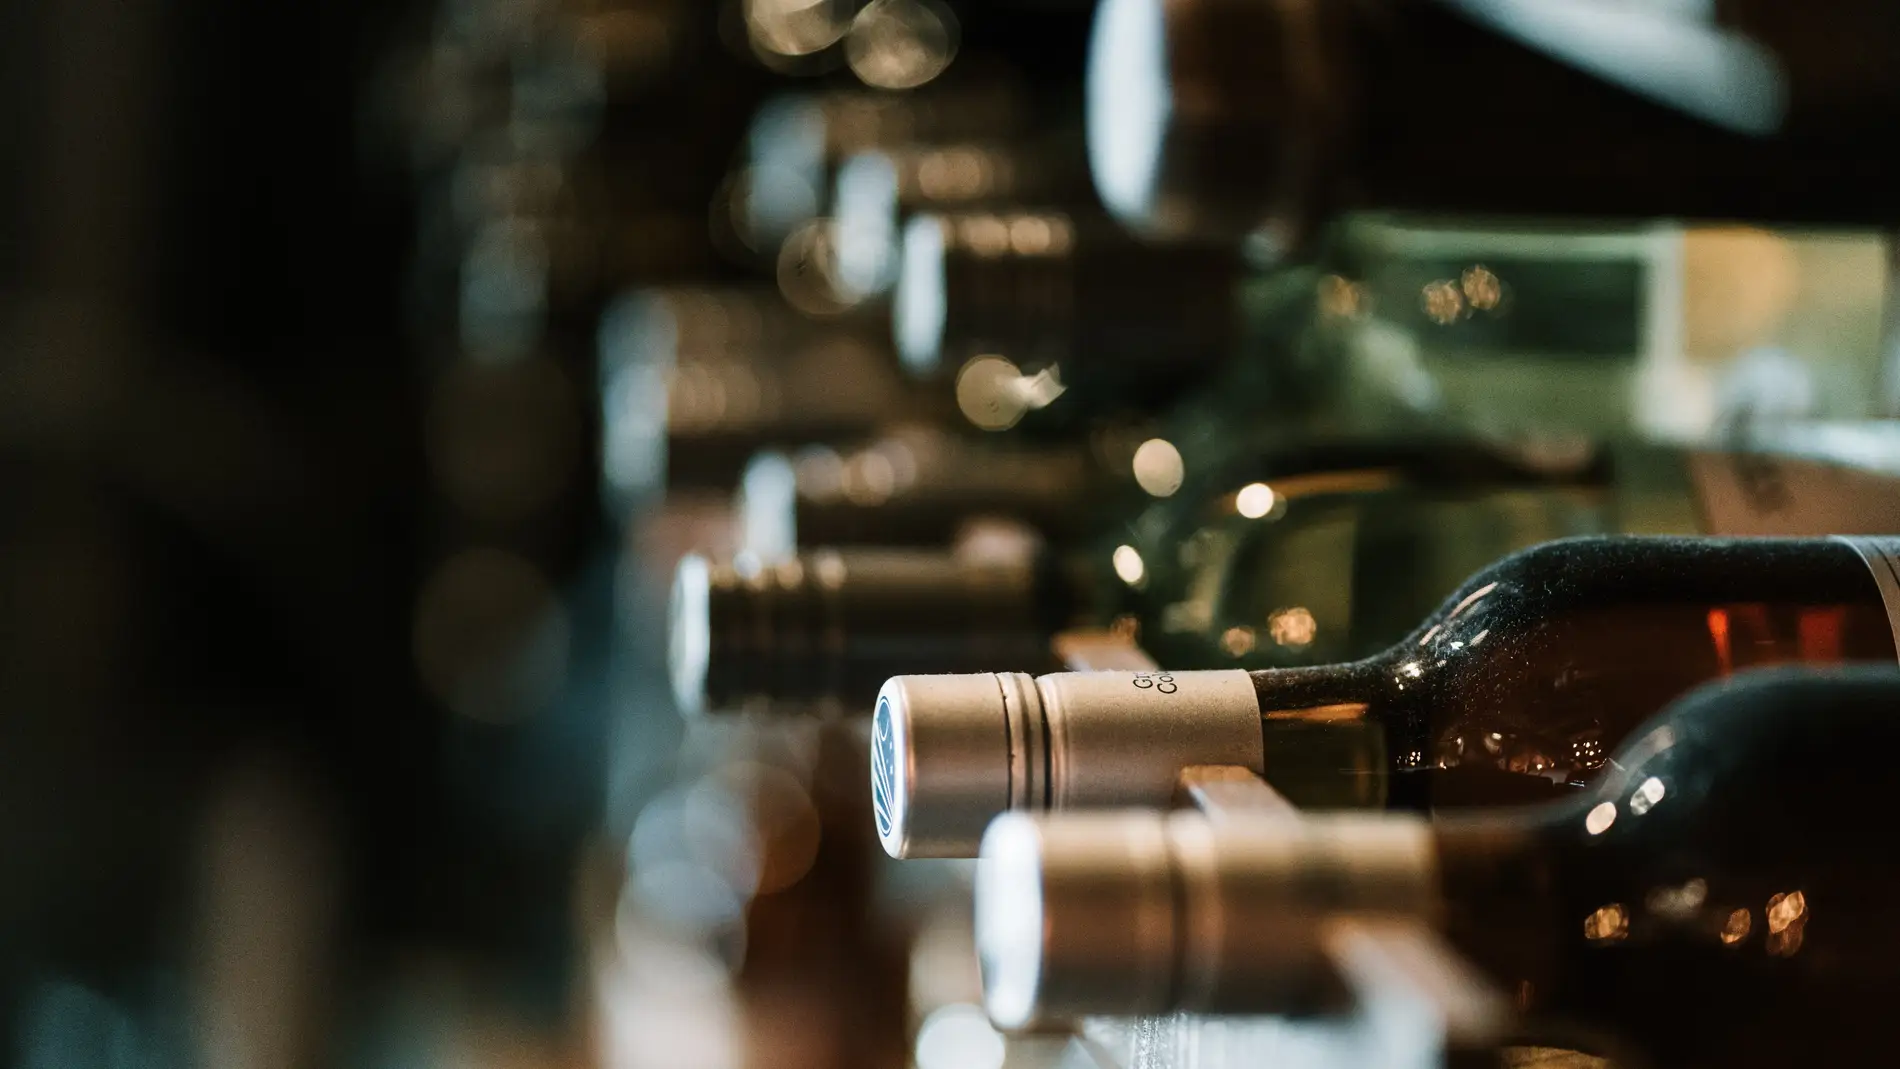 Roban más de 100 botellas valoradas en 150.000 euros en el restaurante Coque de Madrid 